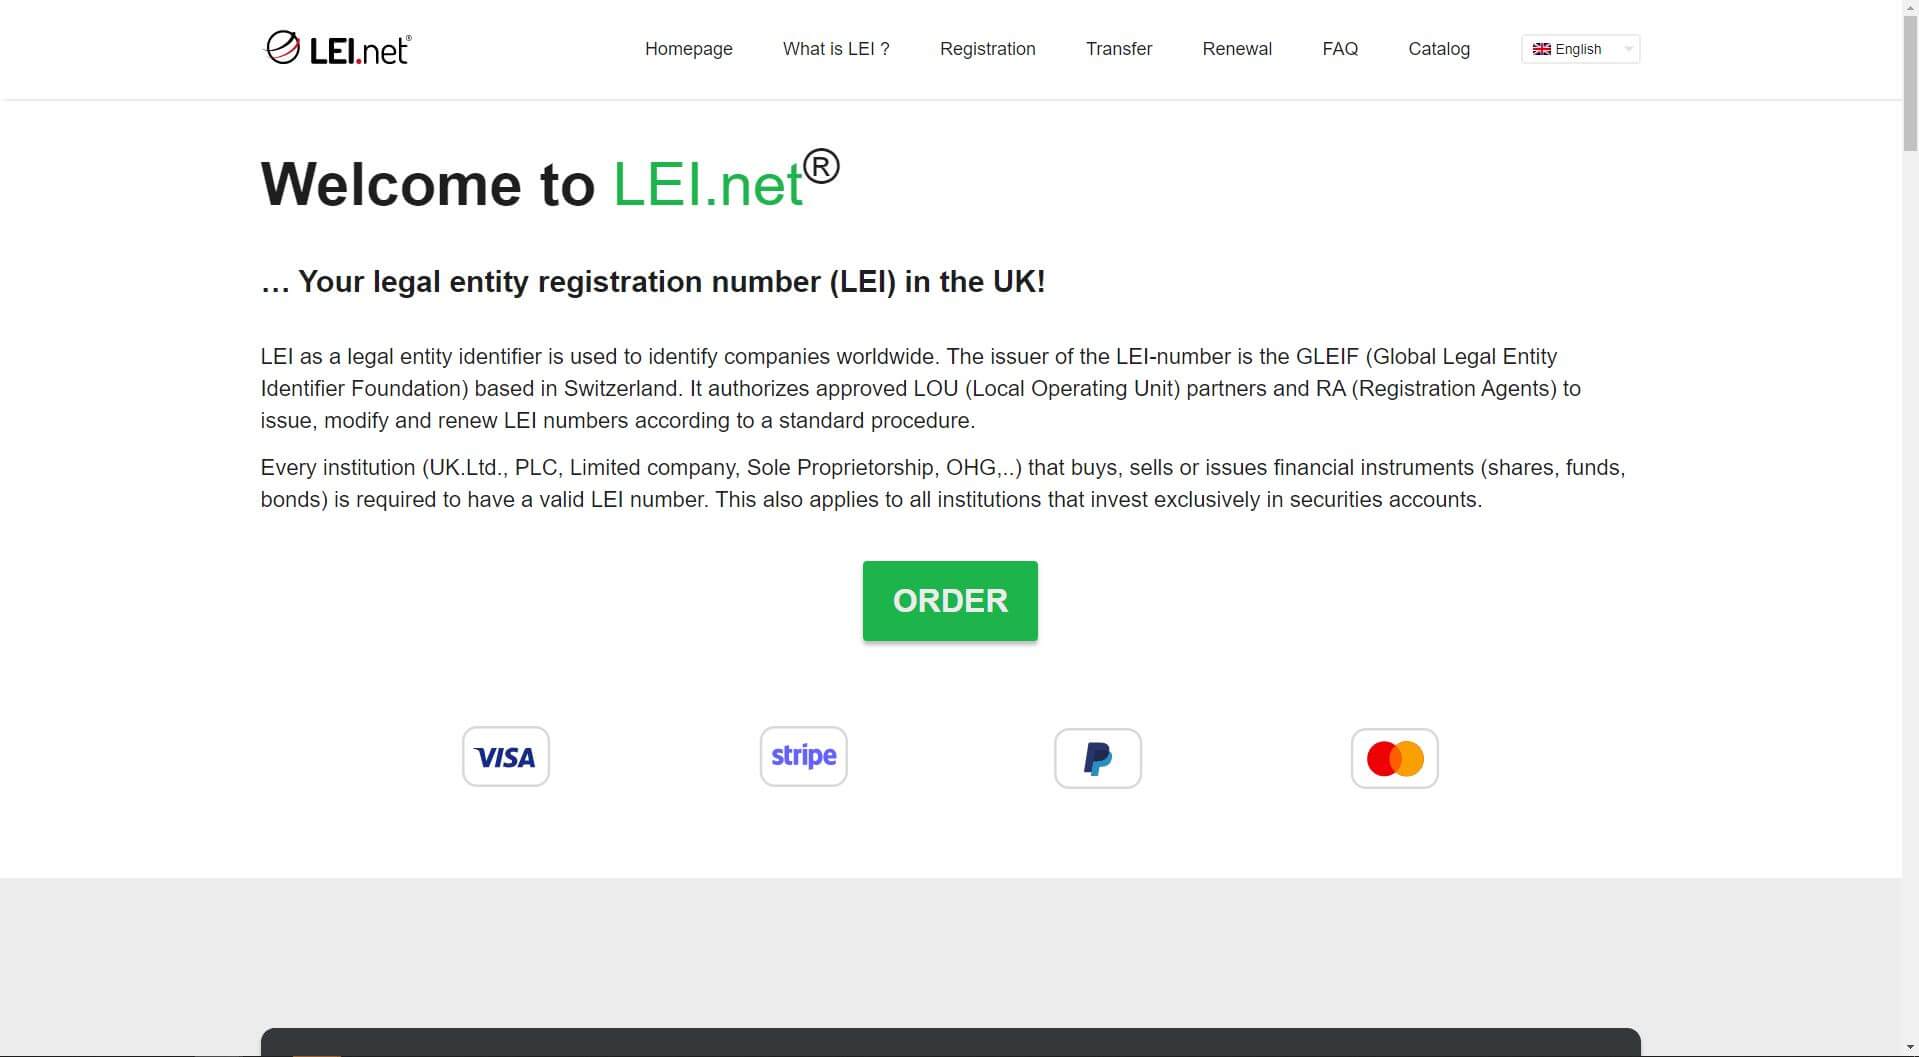 LEI.net – Rejestracja i odnowa numerów LEI